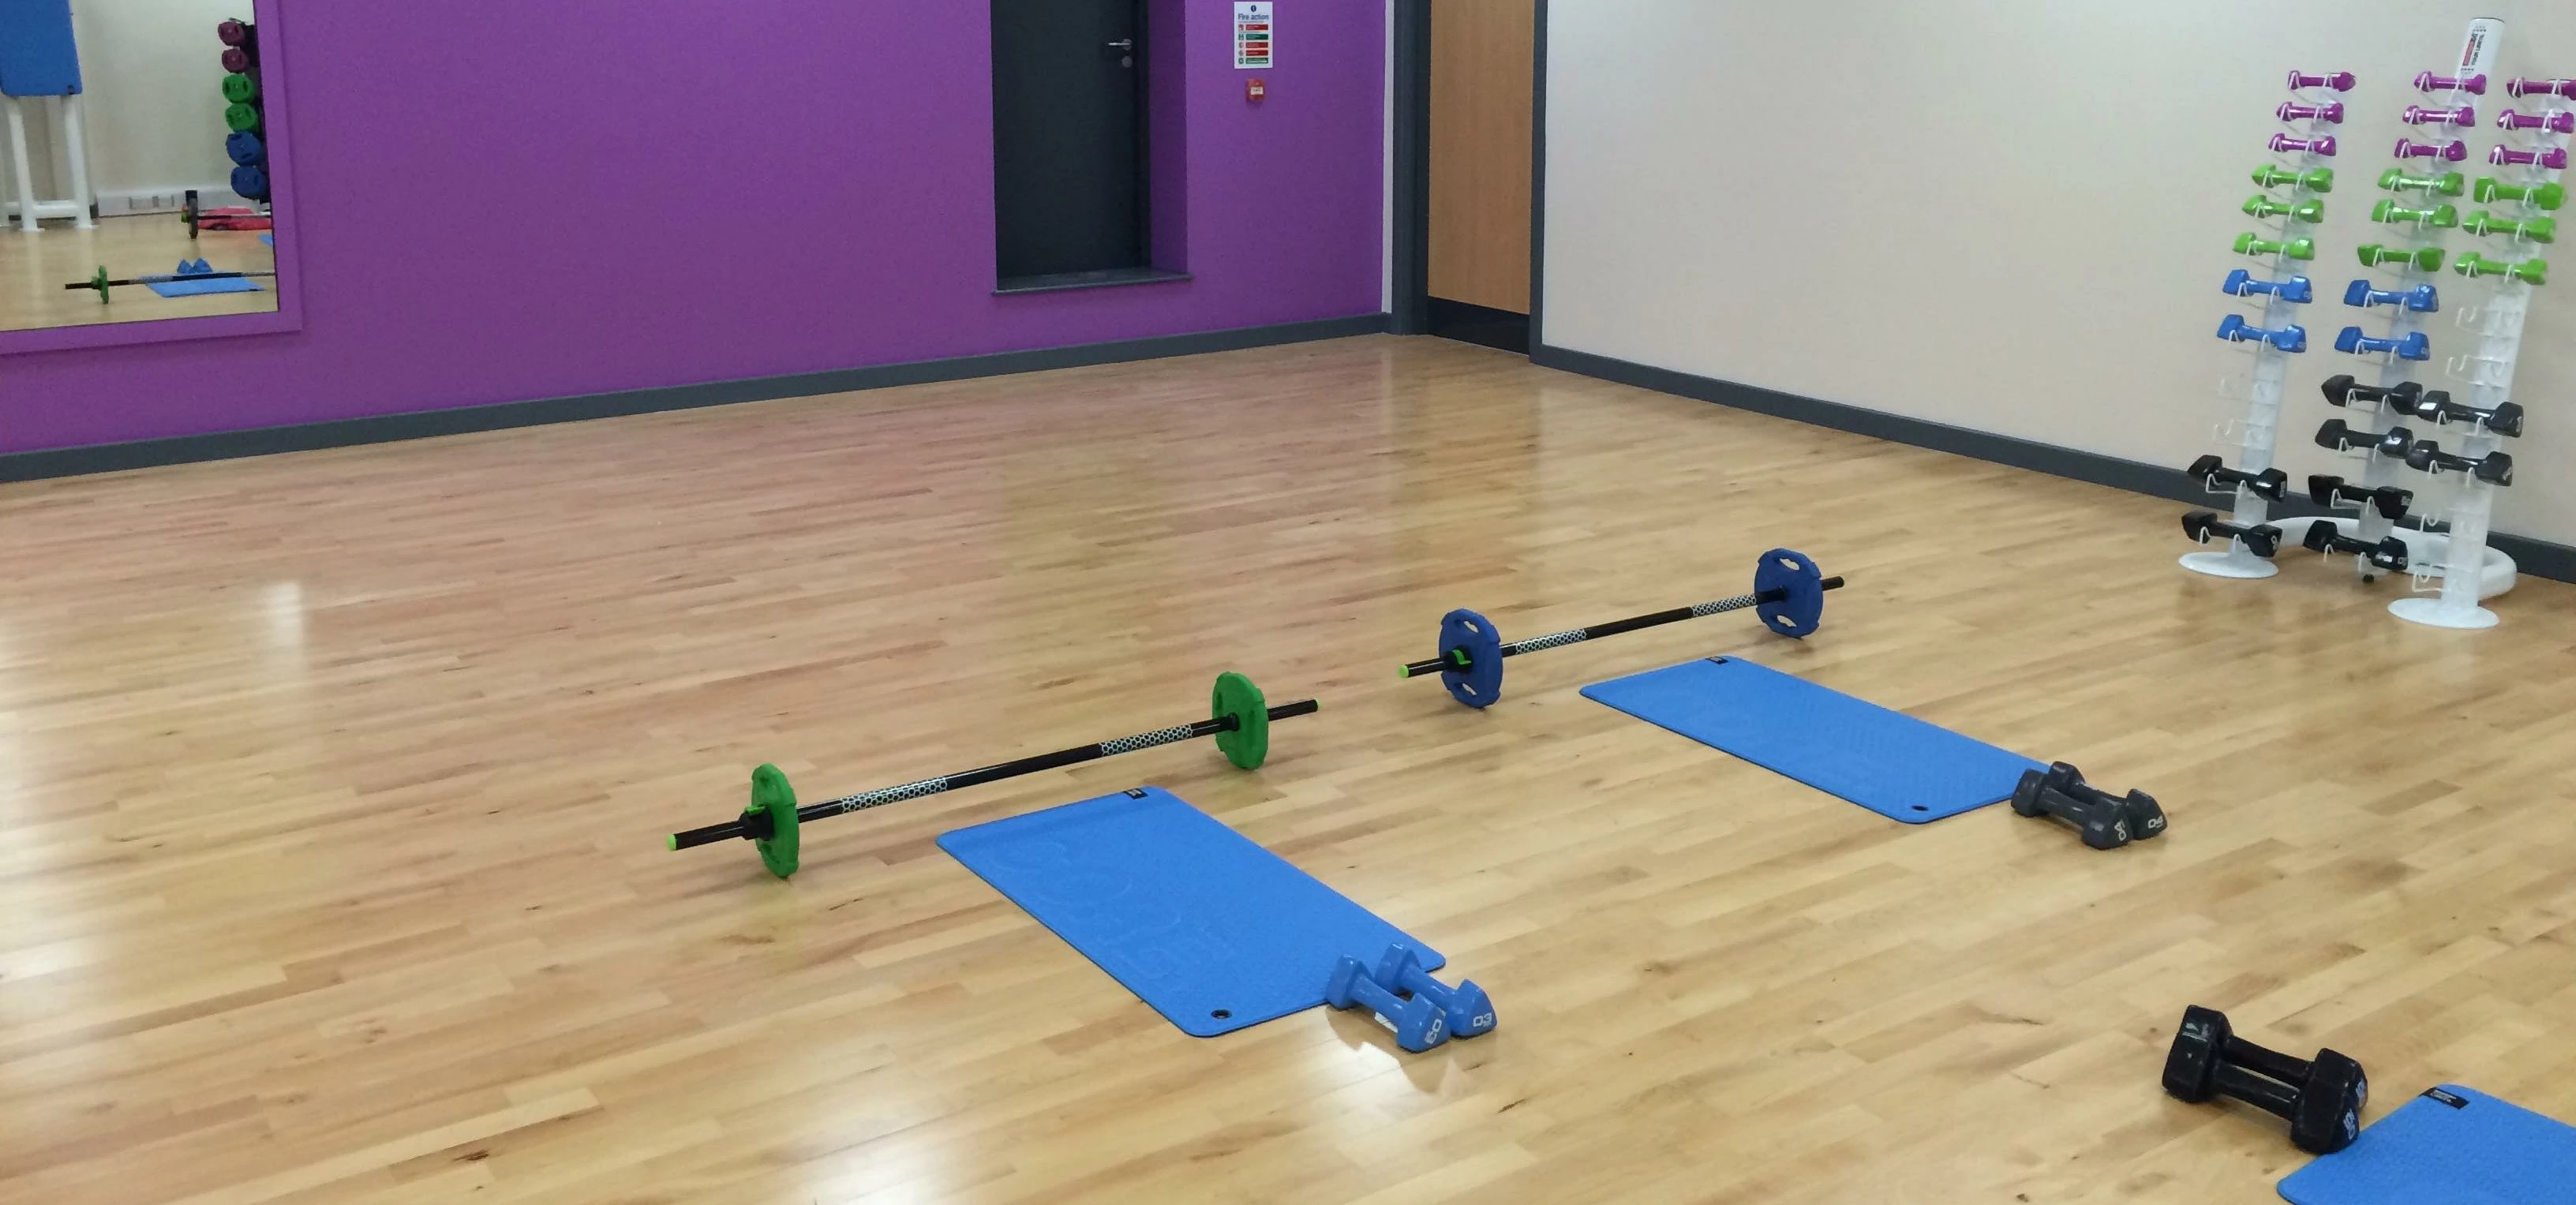 Brand new flooring for exercise studio